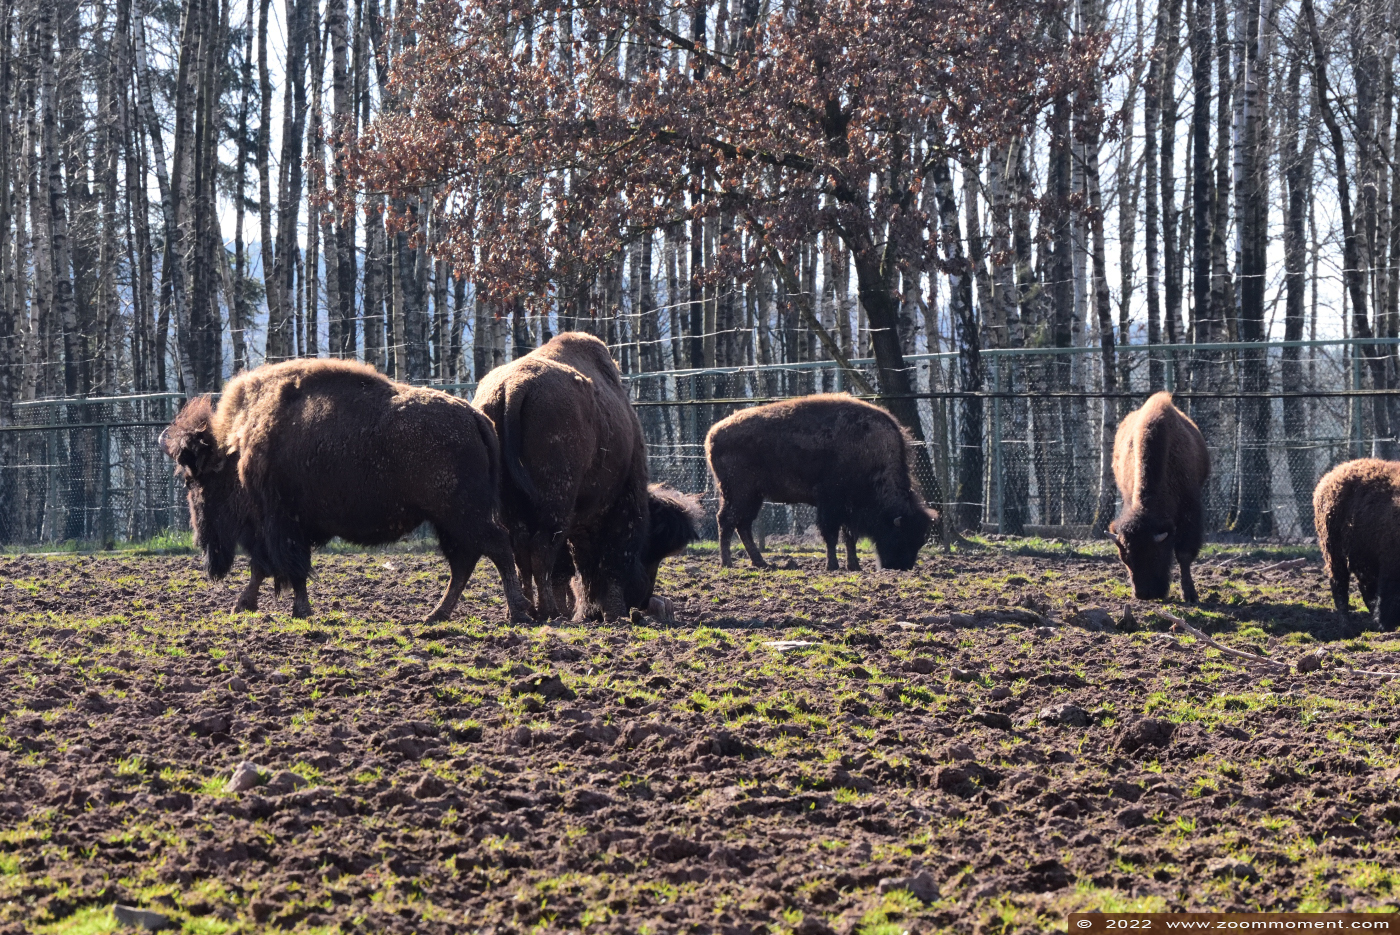 Amerikaanse bizon ( Bison bison bison )  Plains bison or American bison Amerikanische Bison
Keywords: Monde Sauvage Belgium Amerikaanse bizon Bison bison bison Plains bison American bison Amerikanische Bison